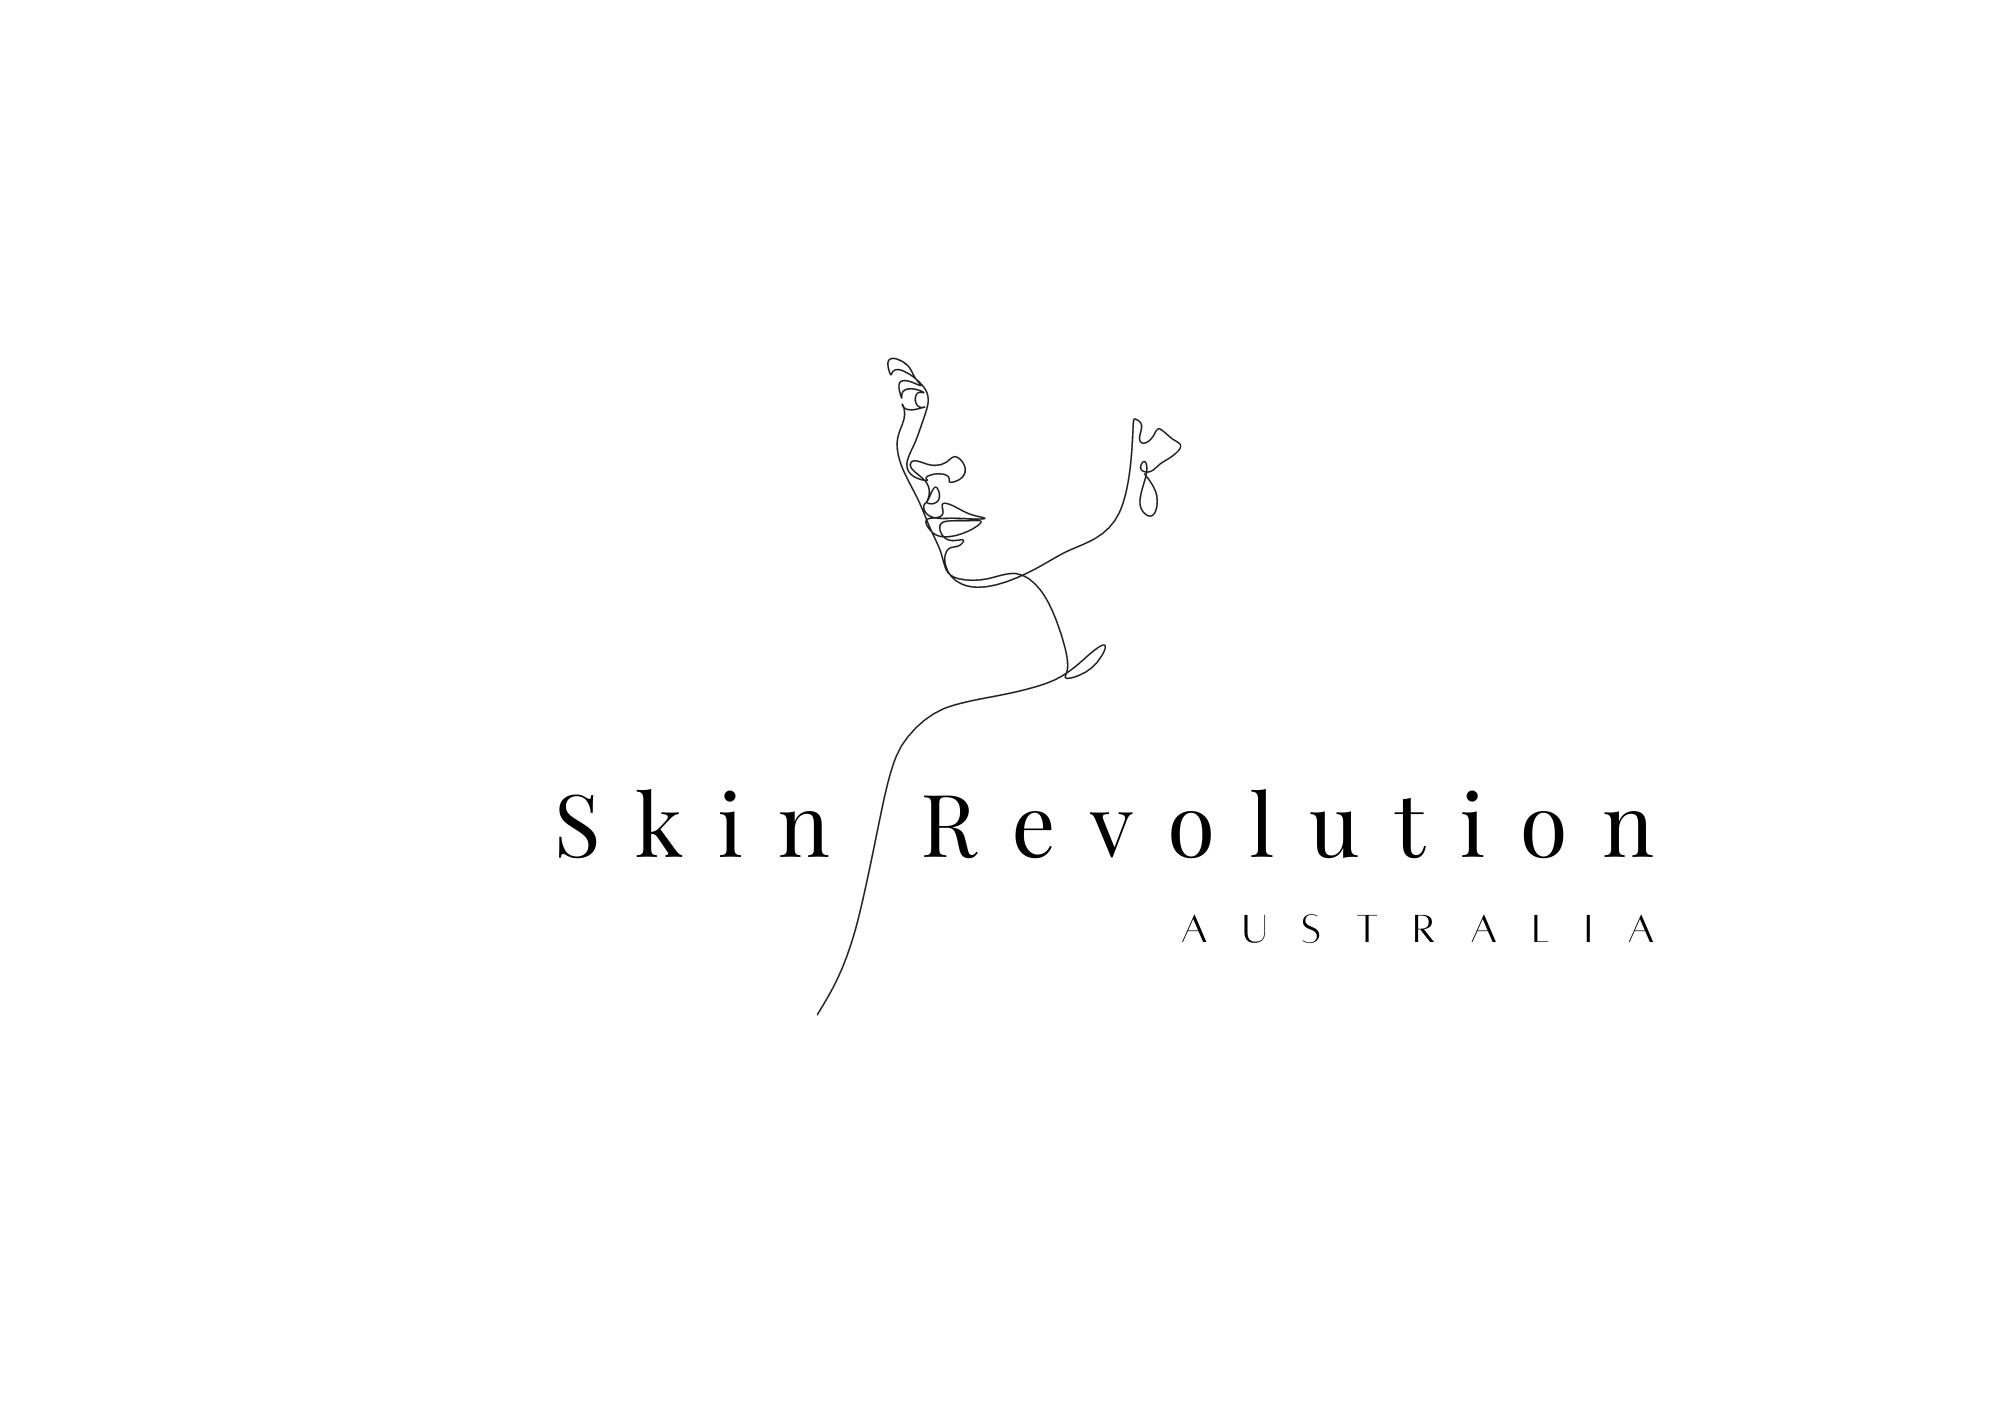 Skin Revolution Australia